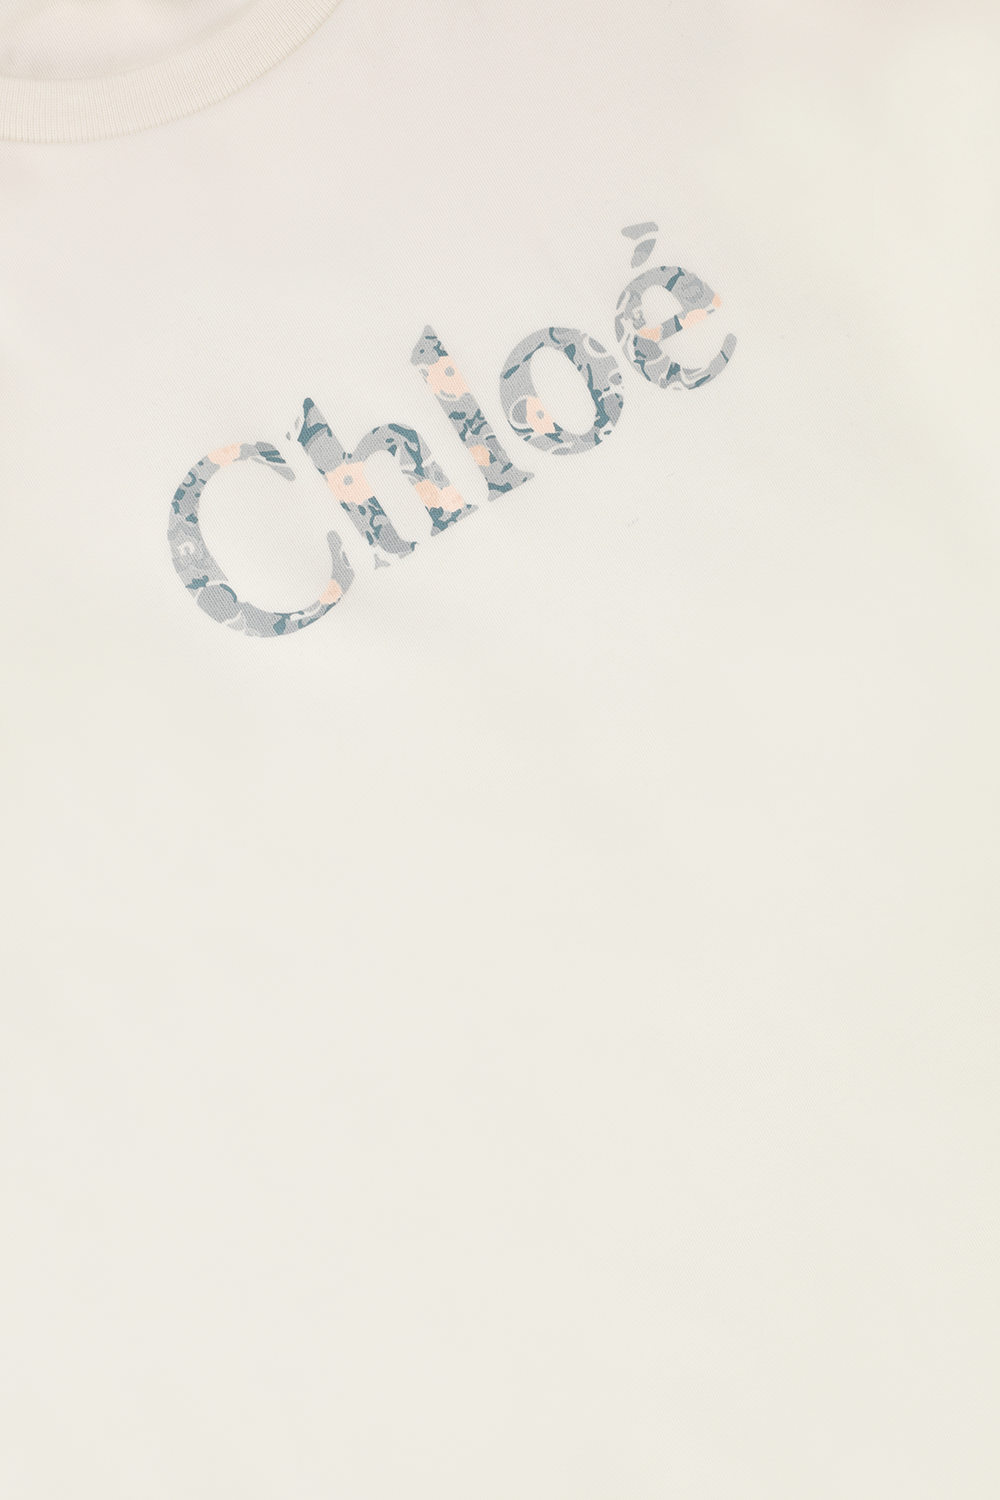 גילאי 4-5 חולצת טי ארוכה עם הדפס לוגו פרחוני CHLOE KIDS